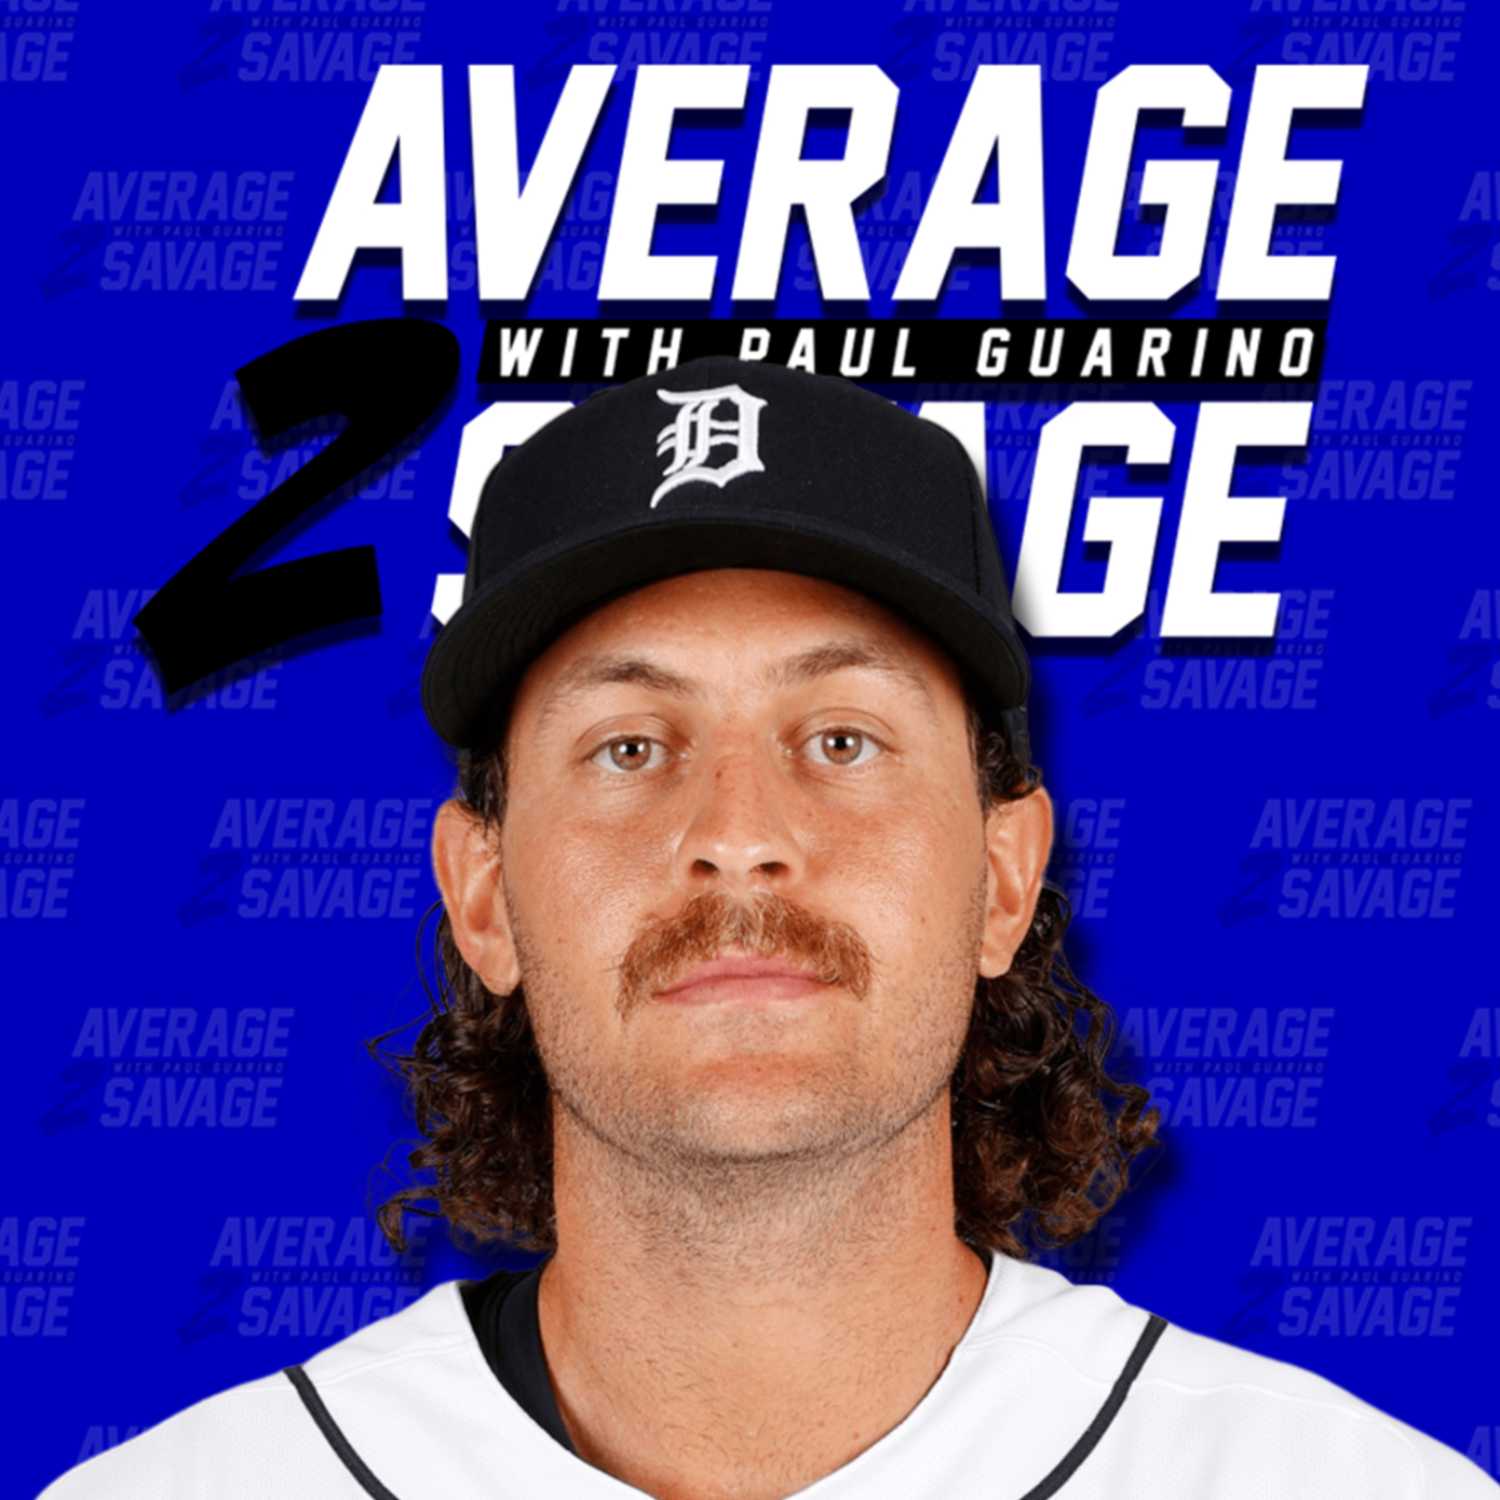 Jason Foley | Average to Savage EP189